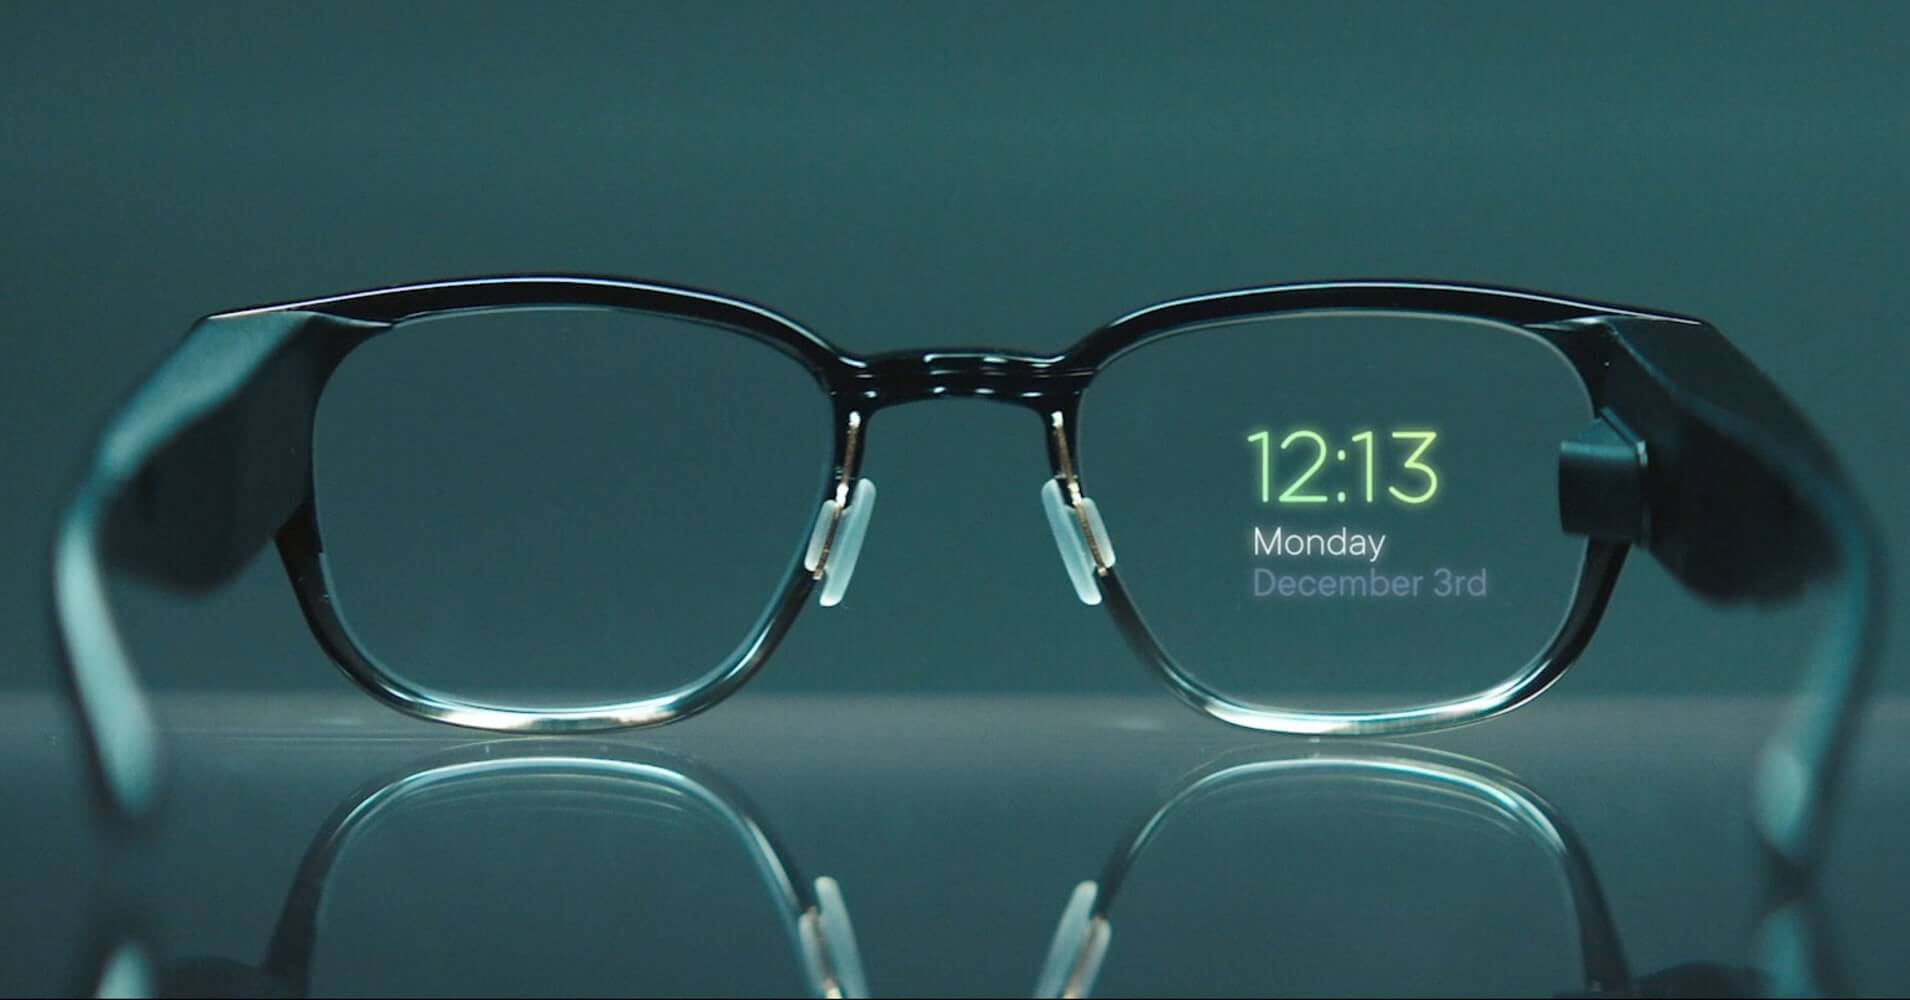 Результат пошуку зображень за запитом "Smart glasses"